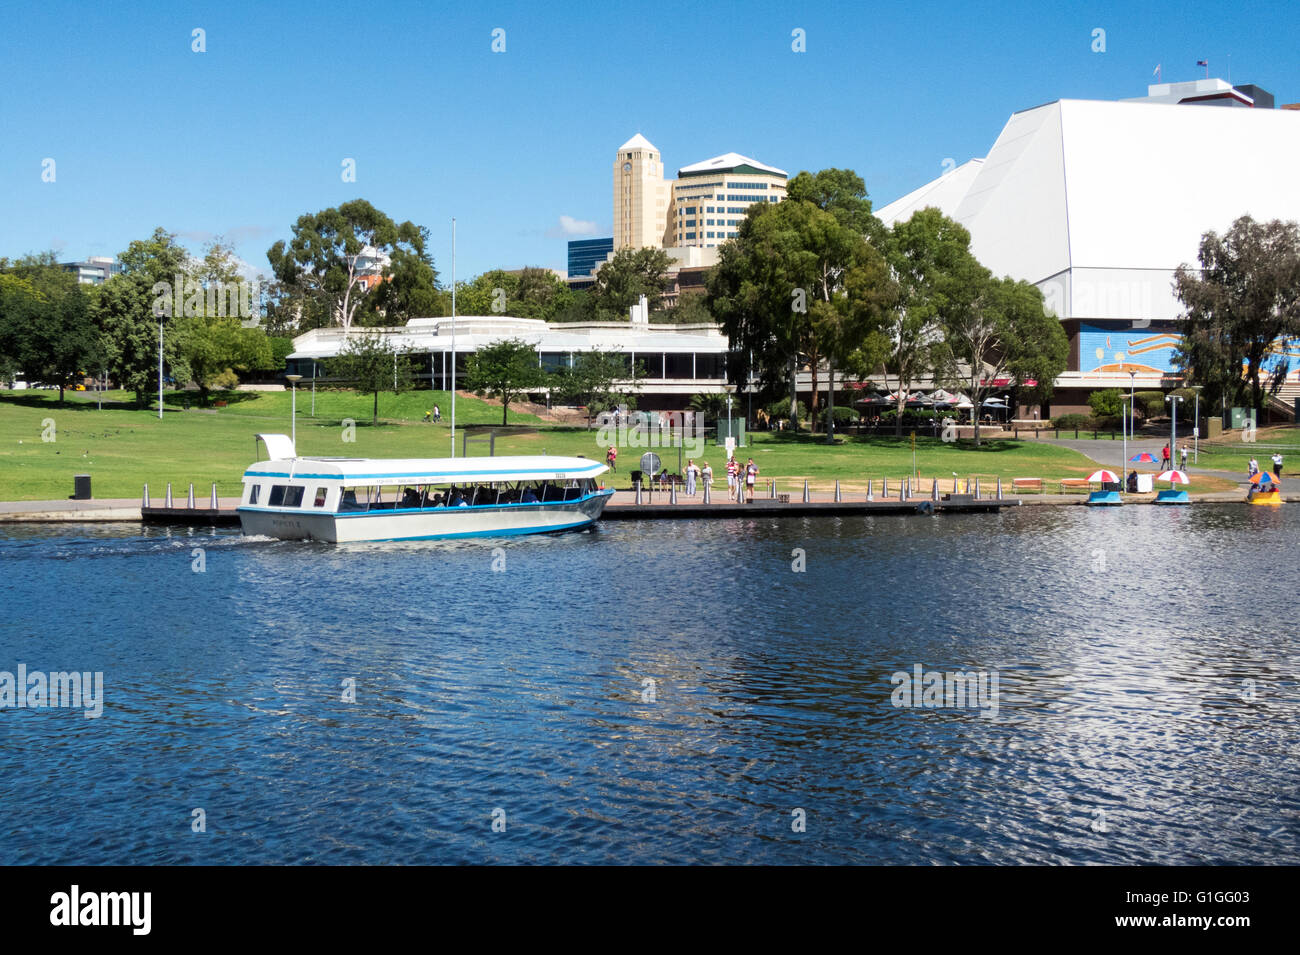 Der Festspielhaus-Komplex mit Blick auf den River Torrens in Adelaide Australien. Das Ausflugsschiff "Popeye" ist vorbei Segeln. Stockfoto